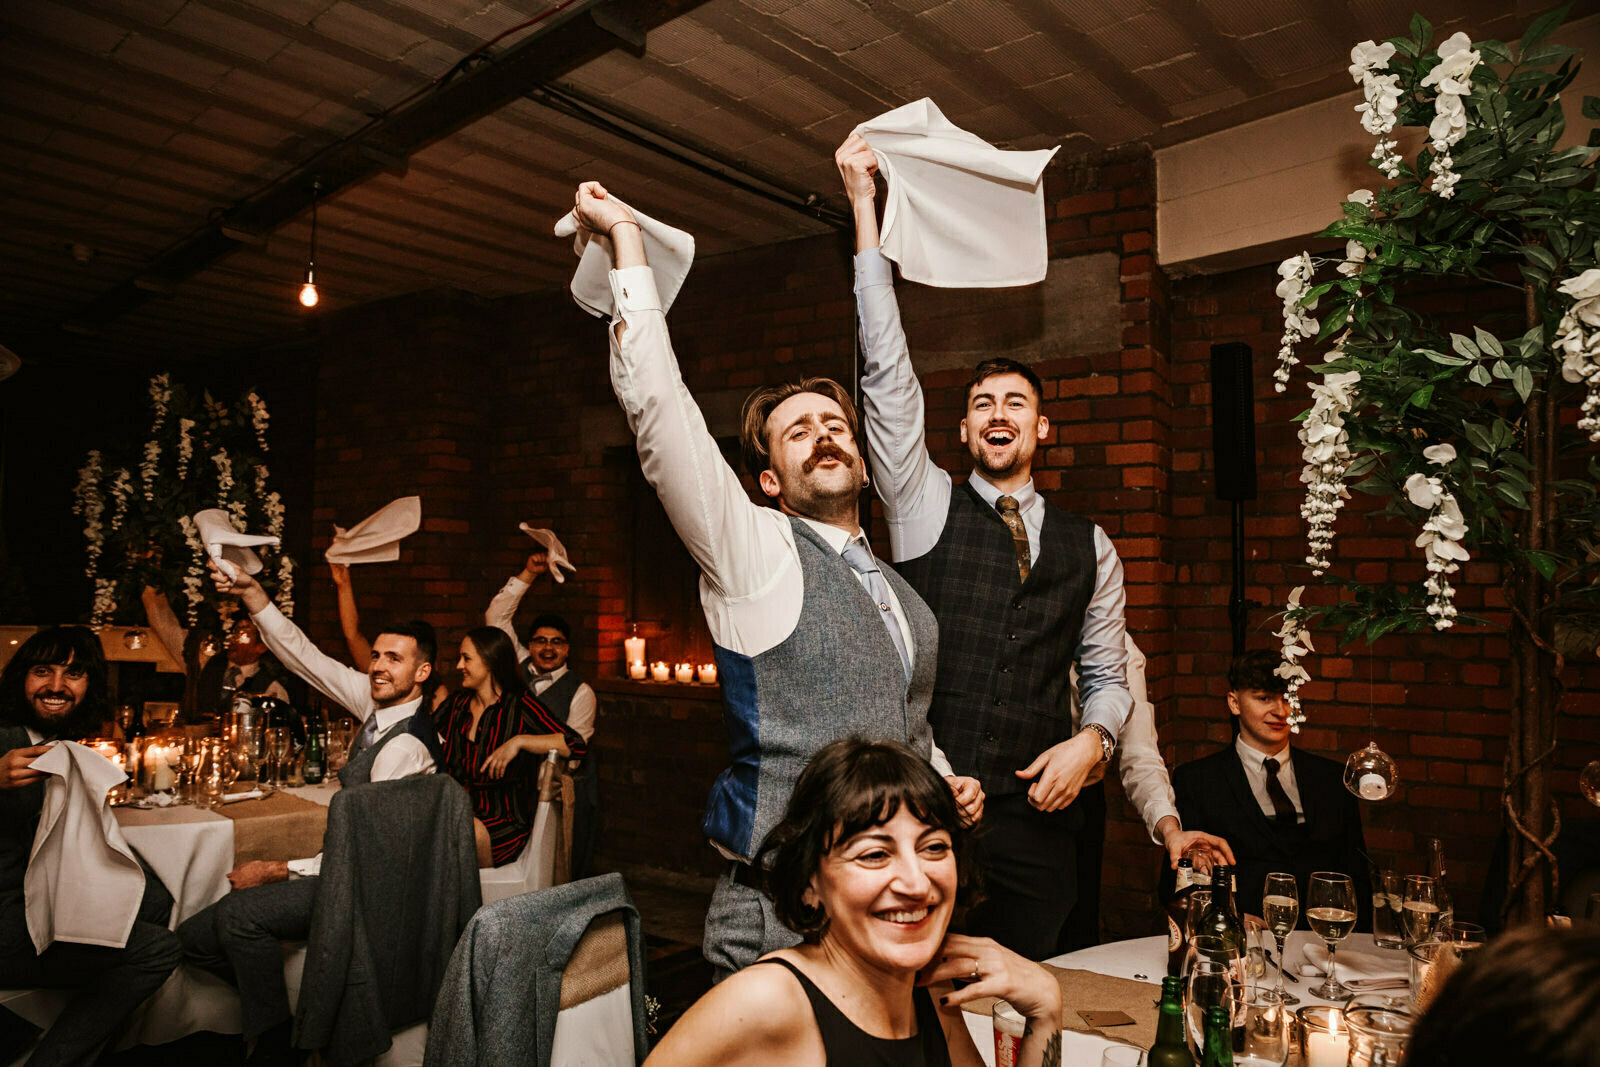 Wedding guests waving napkins